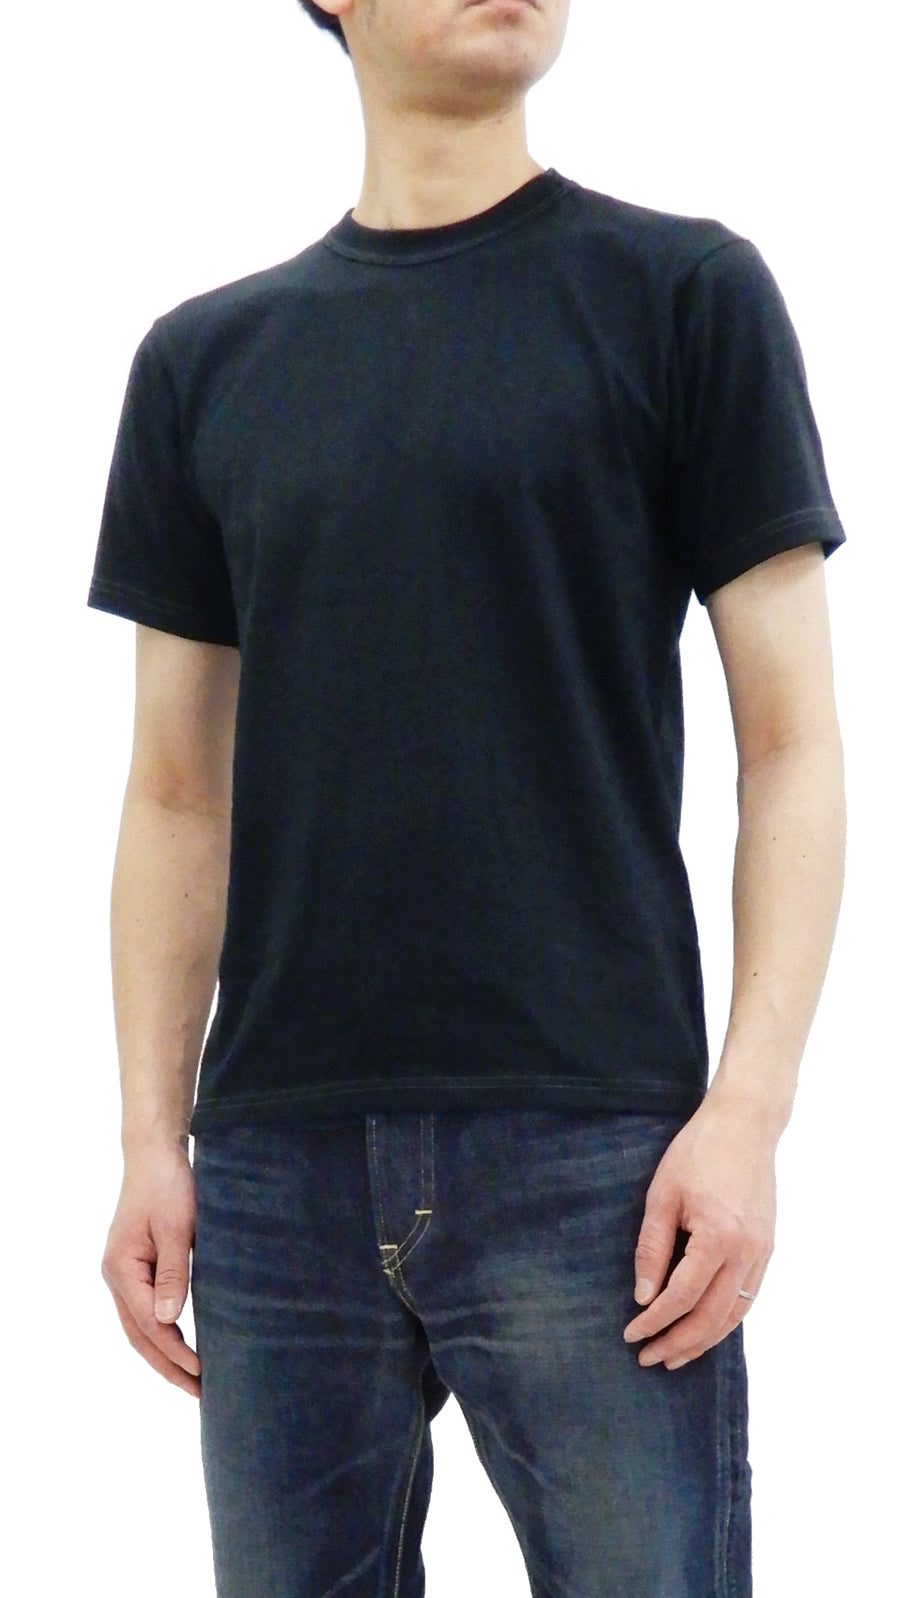 Whitesvill Men's 2-Pack Plain T-shirt Short Sleeve Tee Toyo Enterprises WV73544 Black